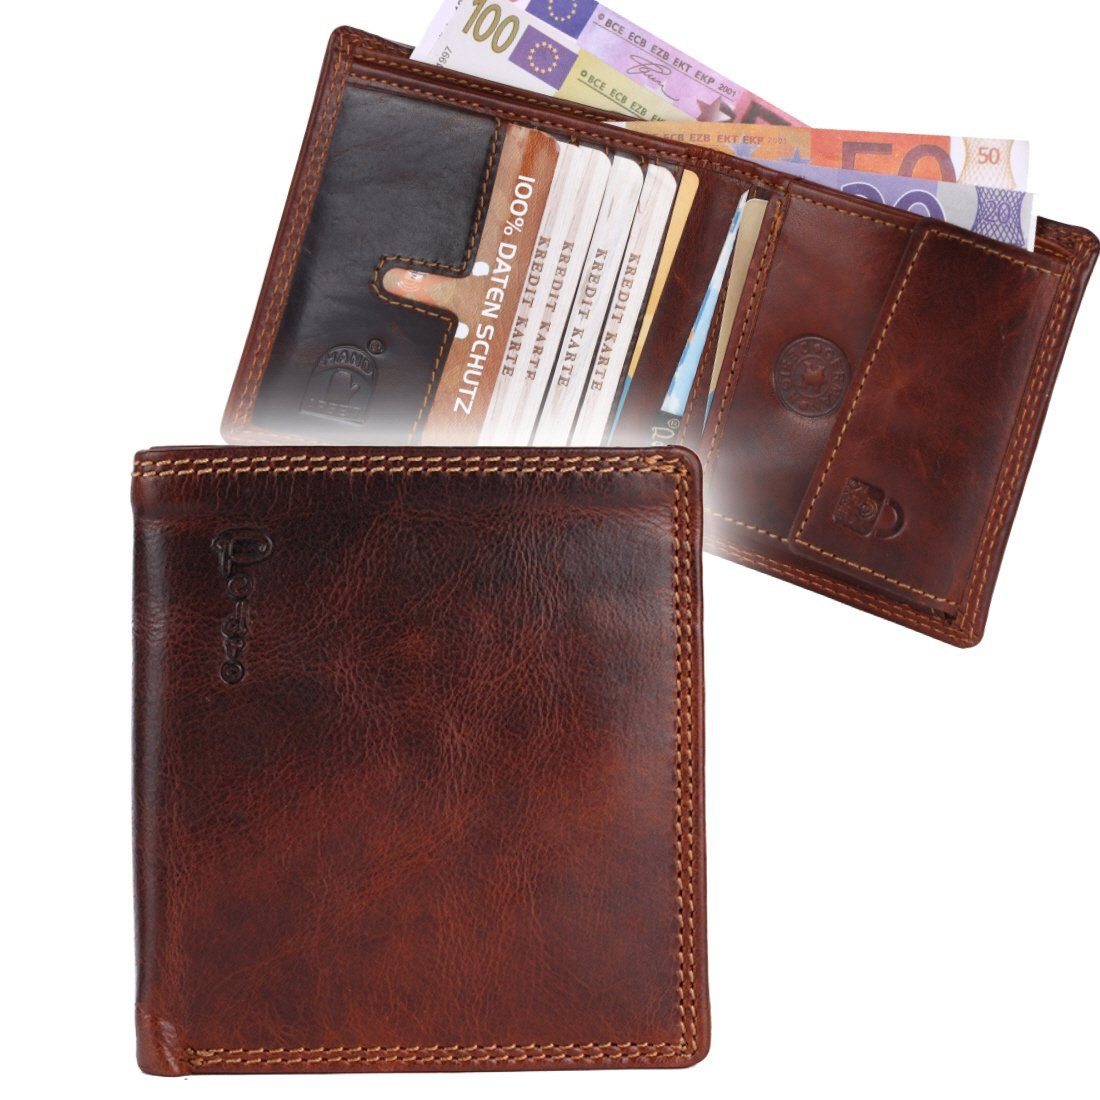 SHG Geldbörse Herren Leder Portemonnaie Schutz Brieftasche Männerbörse, Druckknopfverschluss, Börse RFID Münzfach, Kreditkartenfächer, Geldbeutel